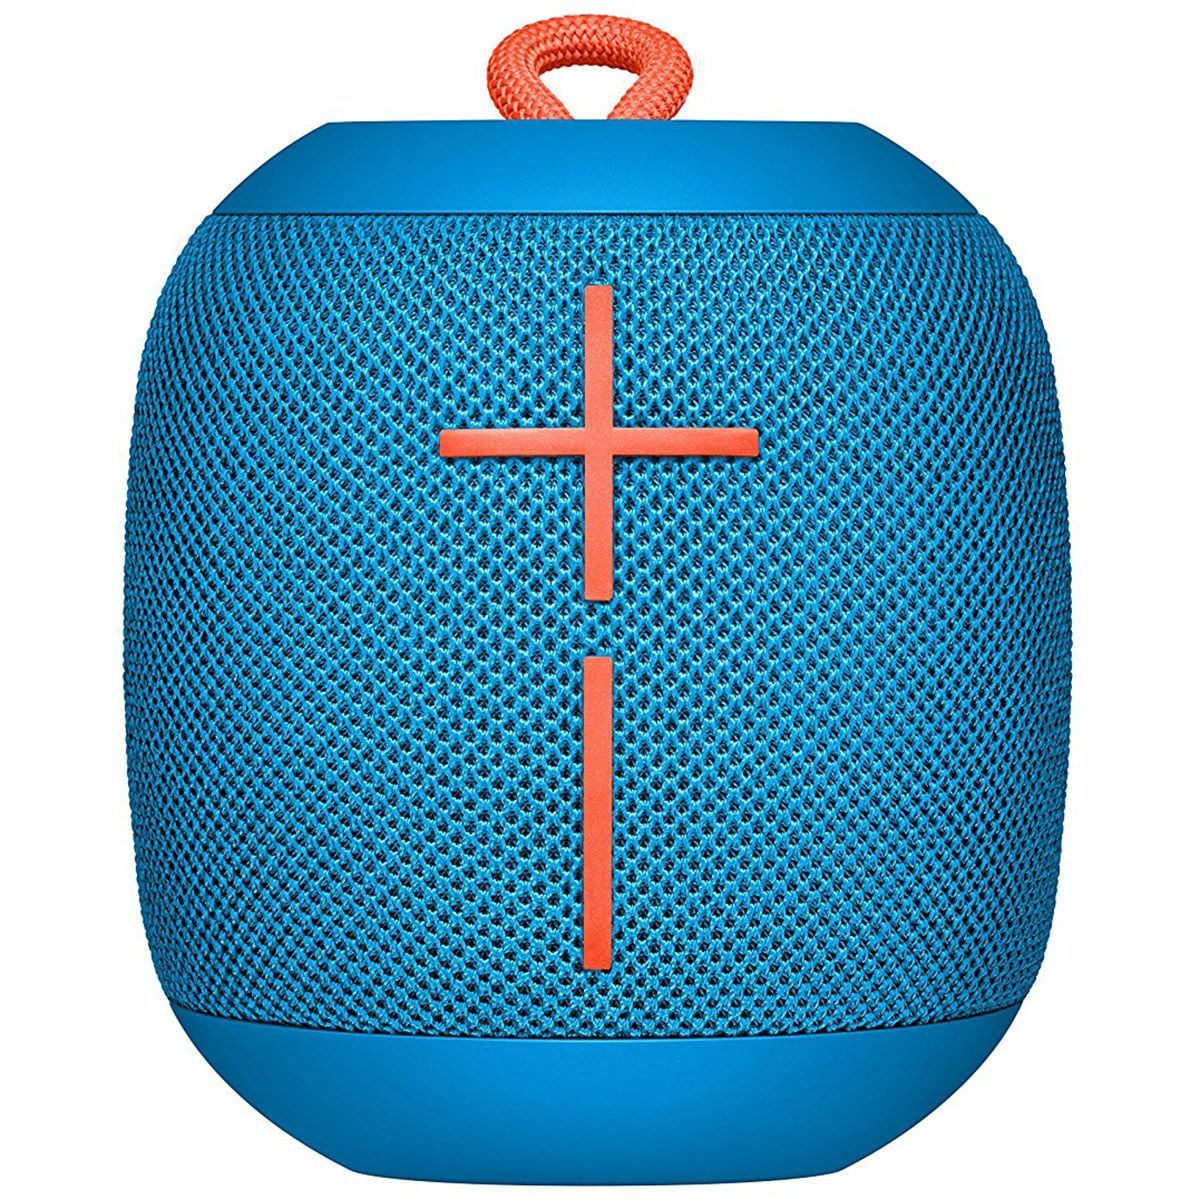 Ultimate Ears WONDERBOOM Portable Waterproof Bluetooth